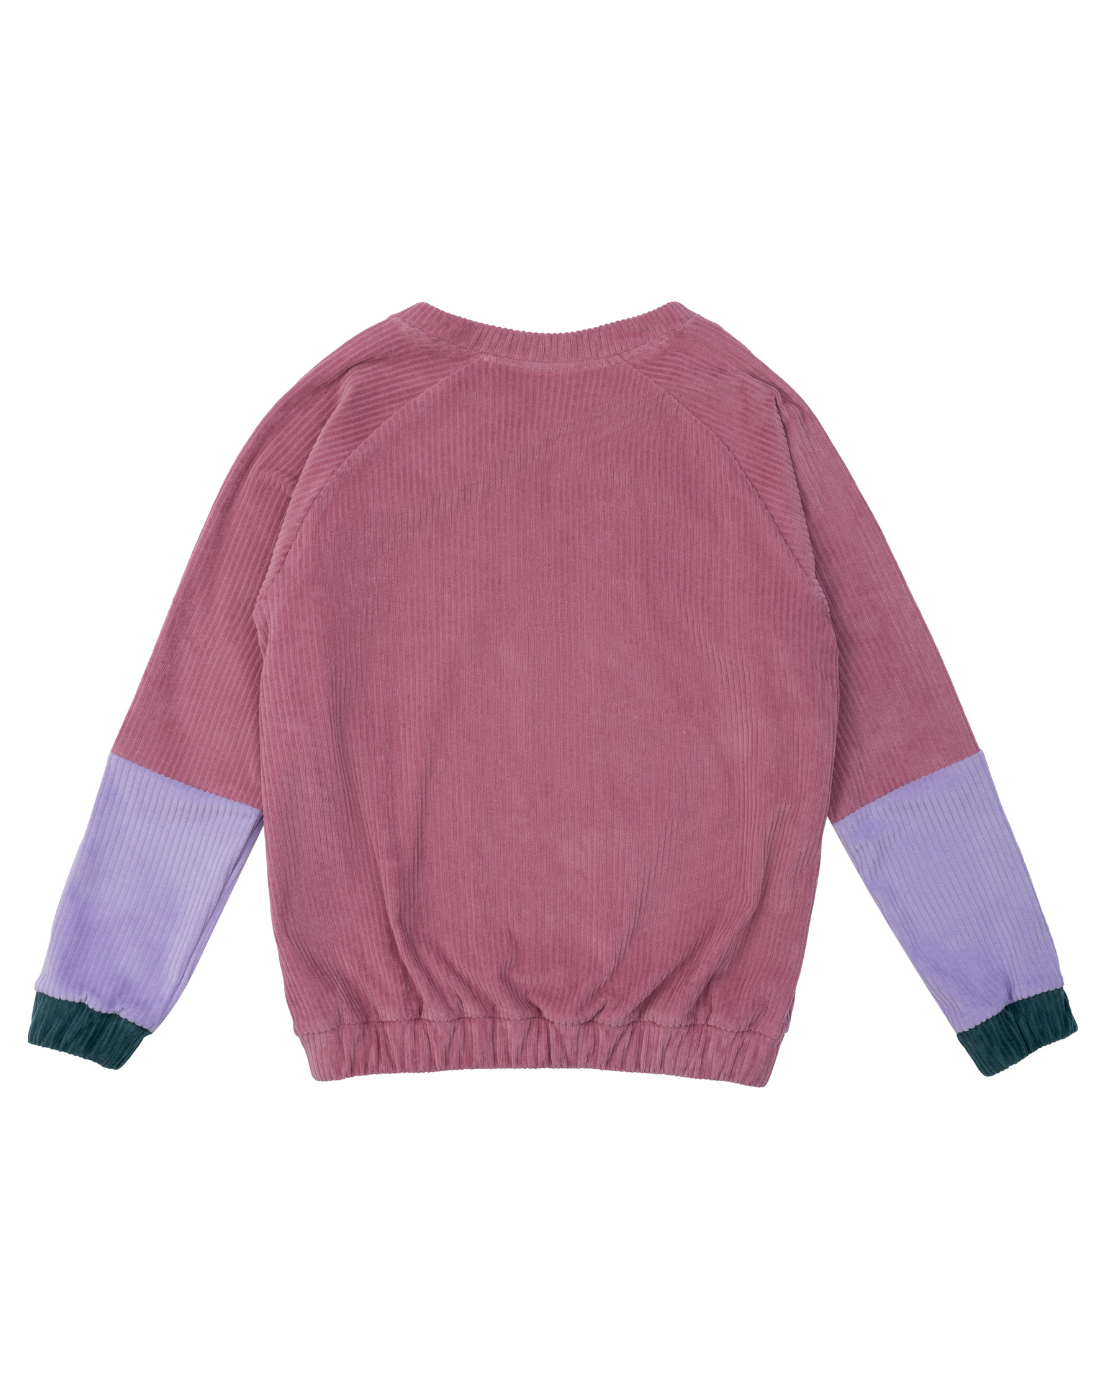 Fairer Unisex Sweater aus Cordnicki aus Bio-Baumwolle in Pink mit fliederfarbenen Ärmeln von der Marke Oktopulli 